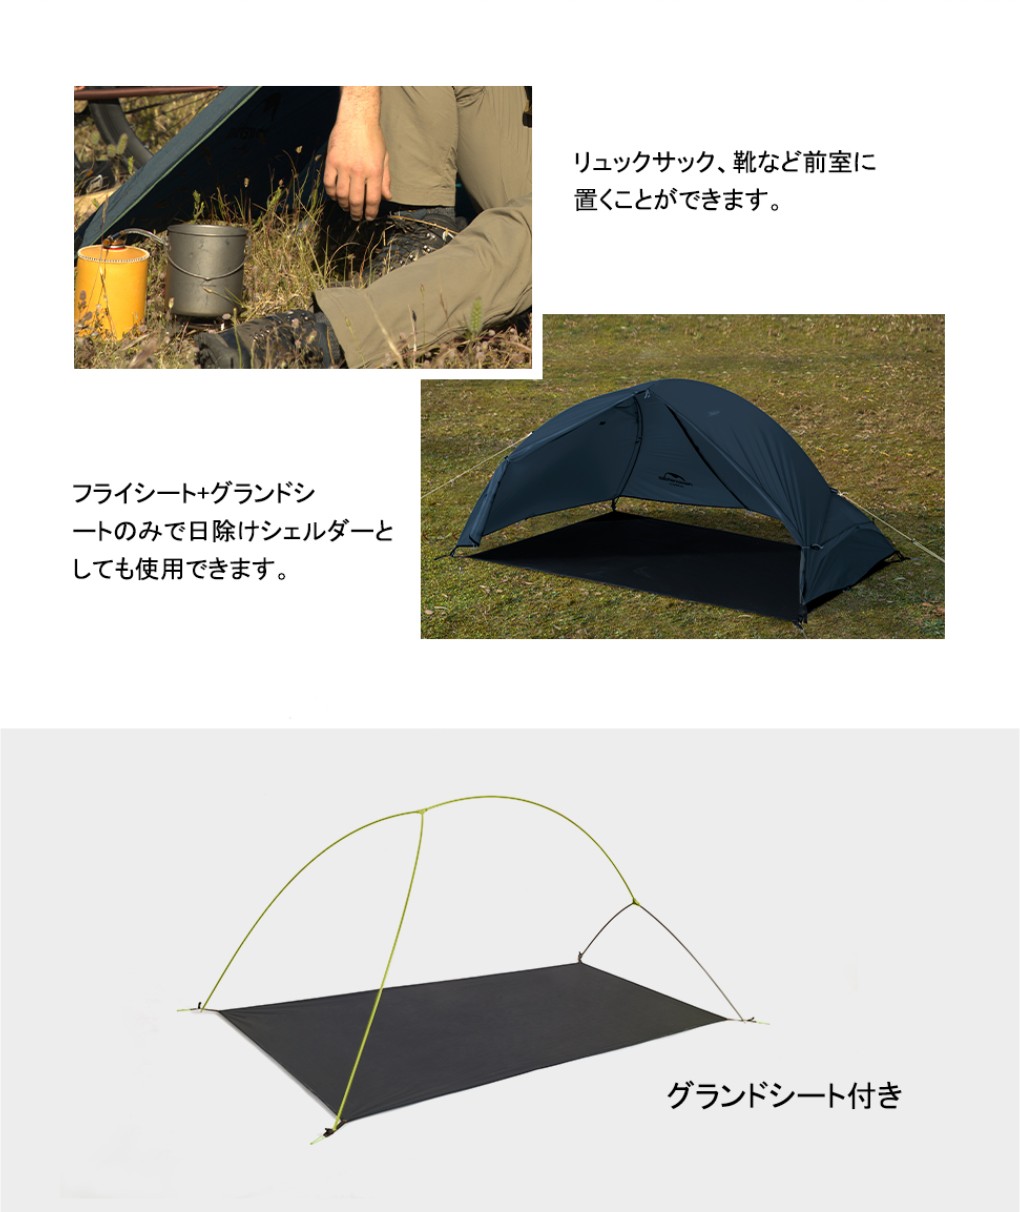 Naturehike 自立式 テント ソロ 1人用 Spider1 自転車旅行 ソロテント 防水防風